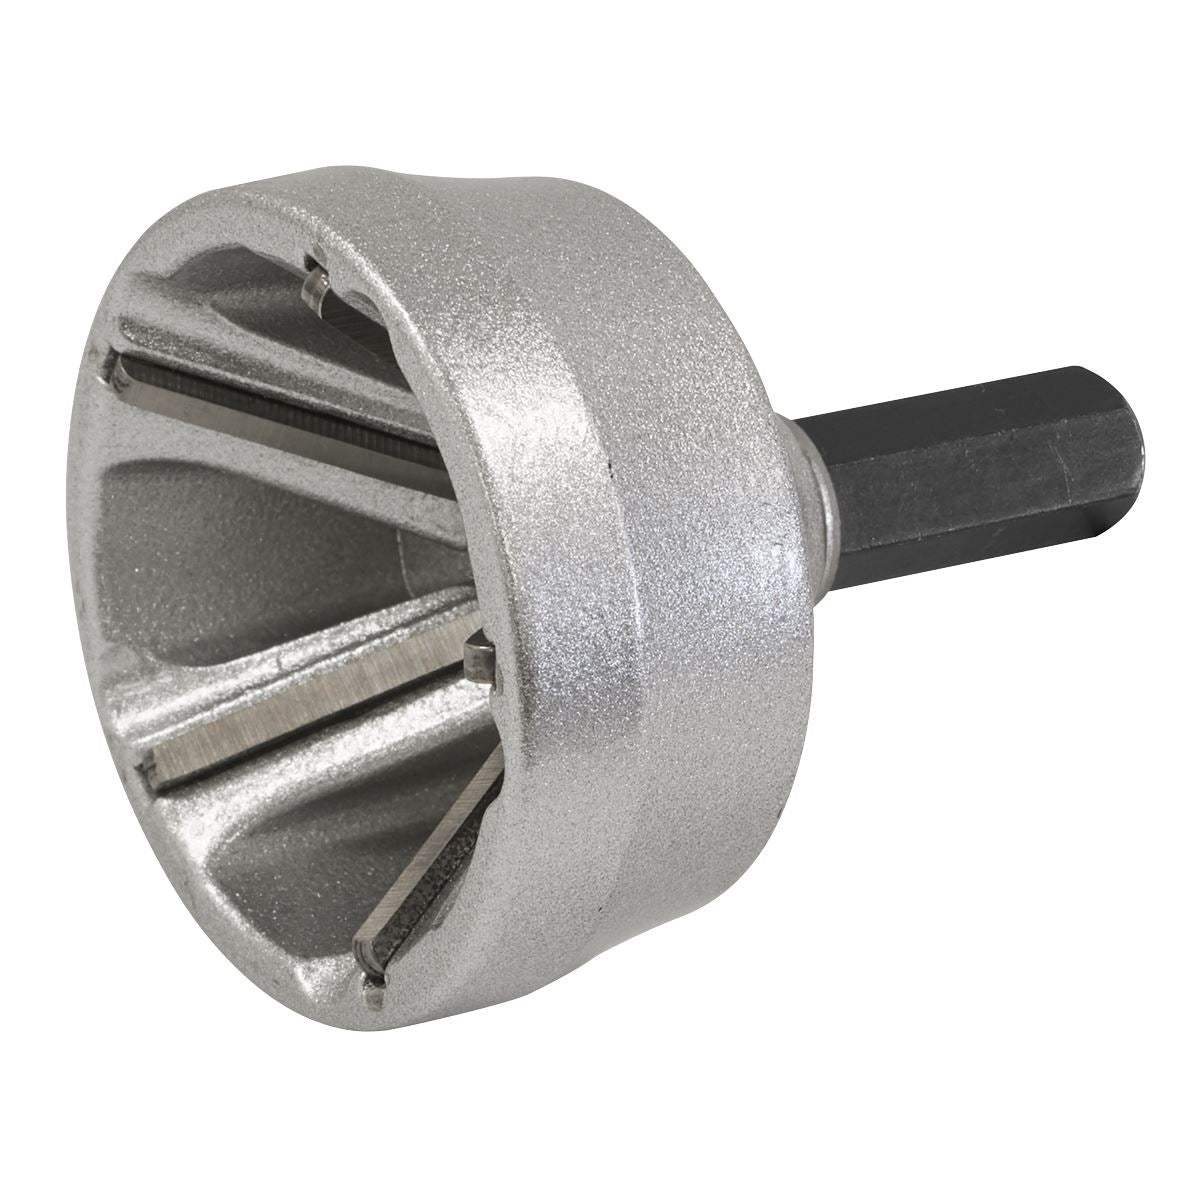 Sealey External Deburring/Chamfer Tool Ø13-35mm